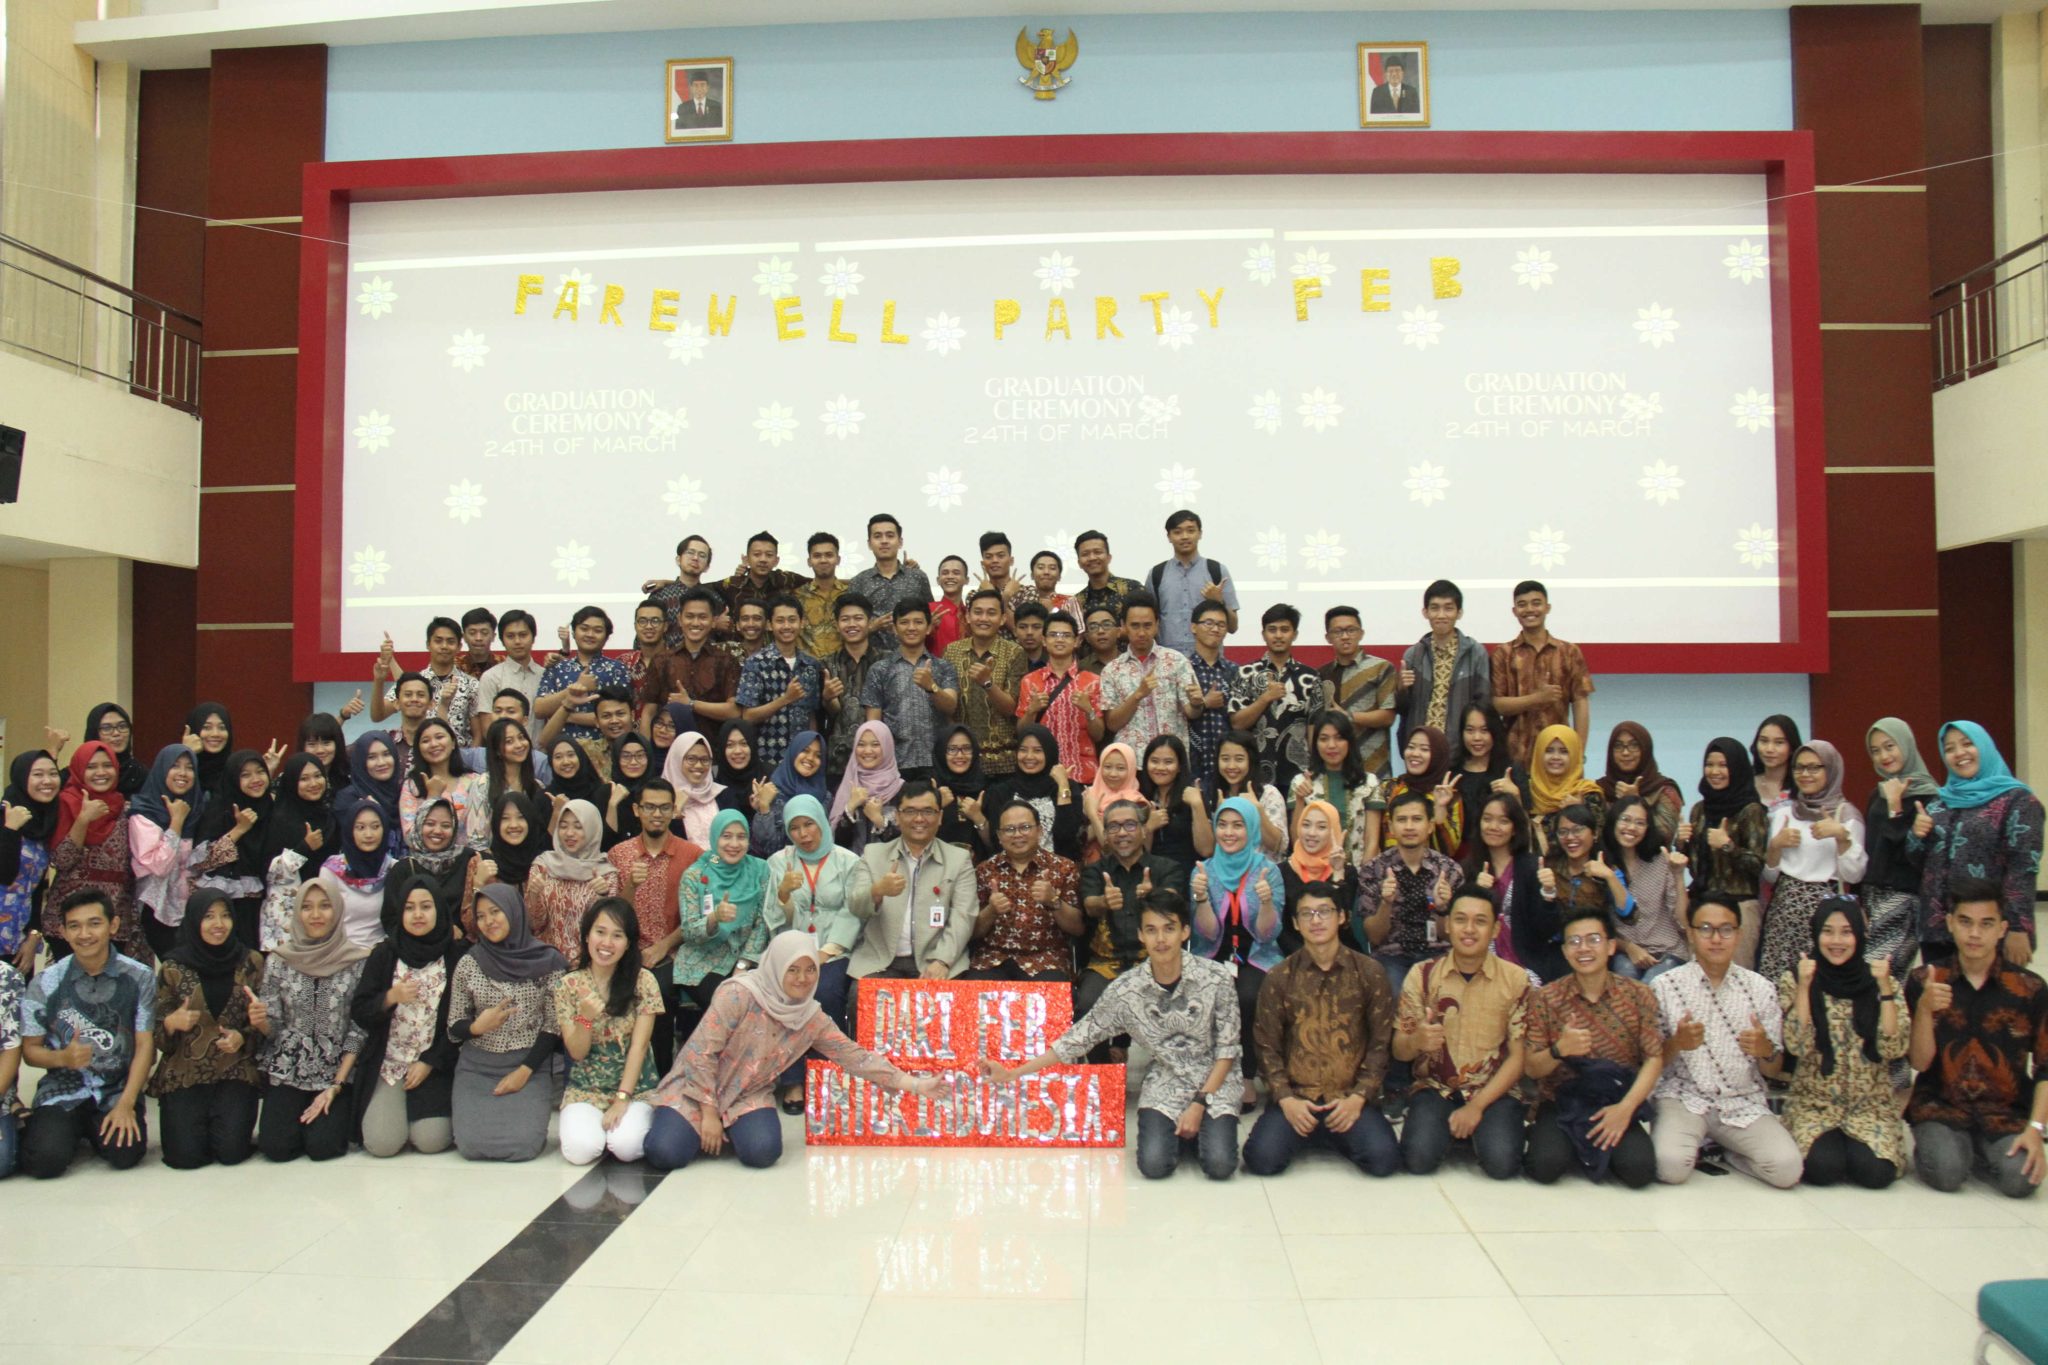 Farewell Party “Dari FEB untuk Indonesia!”